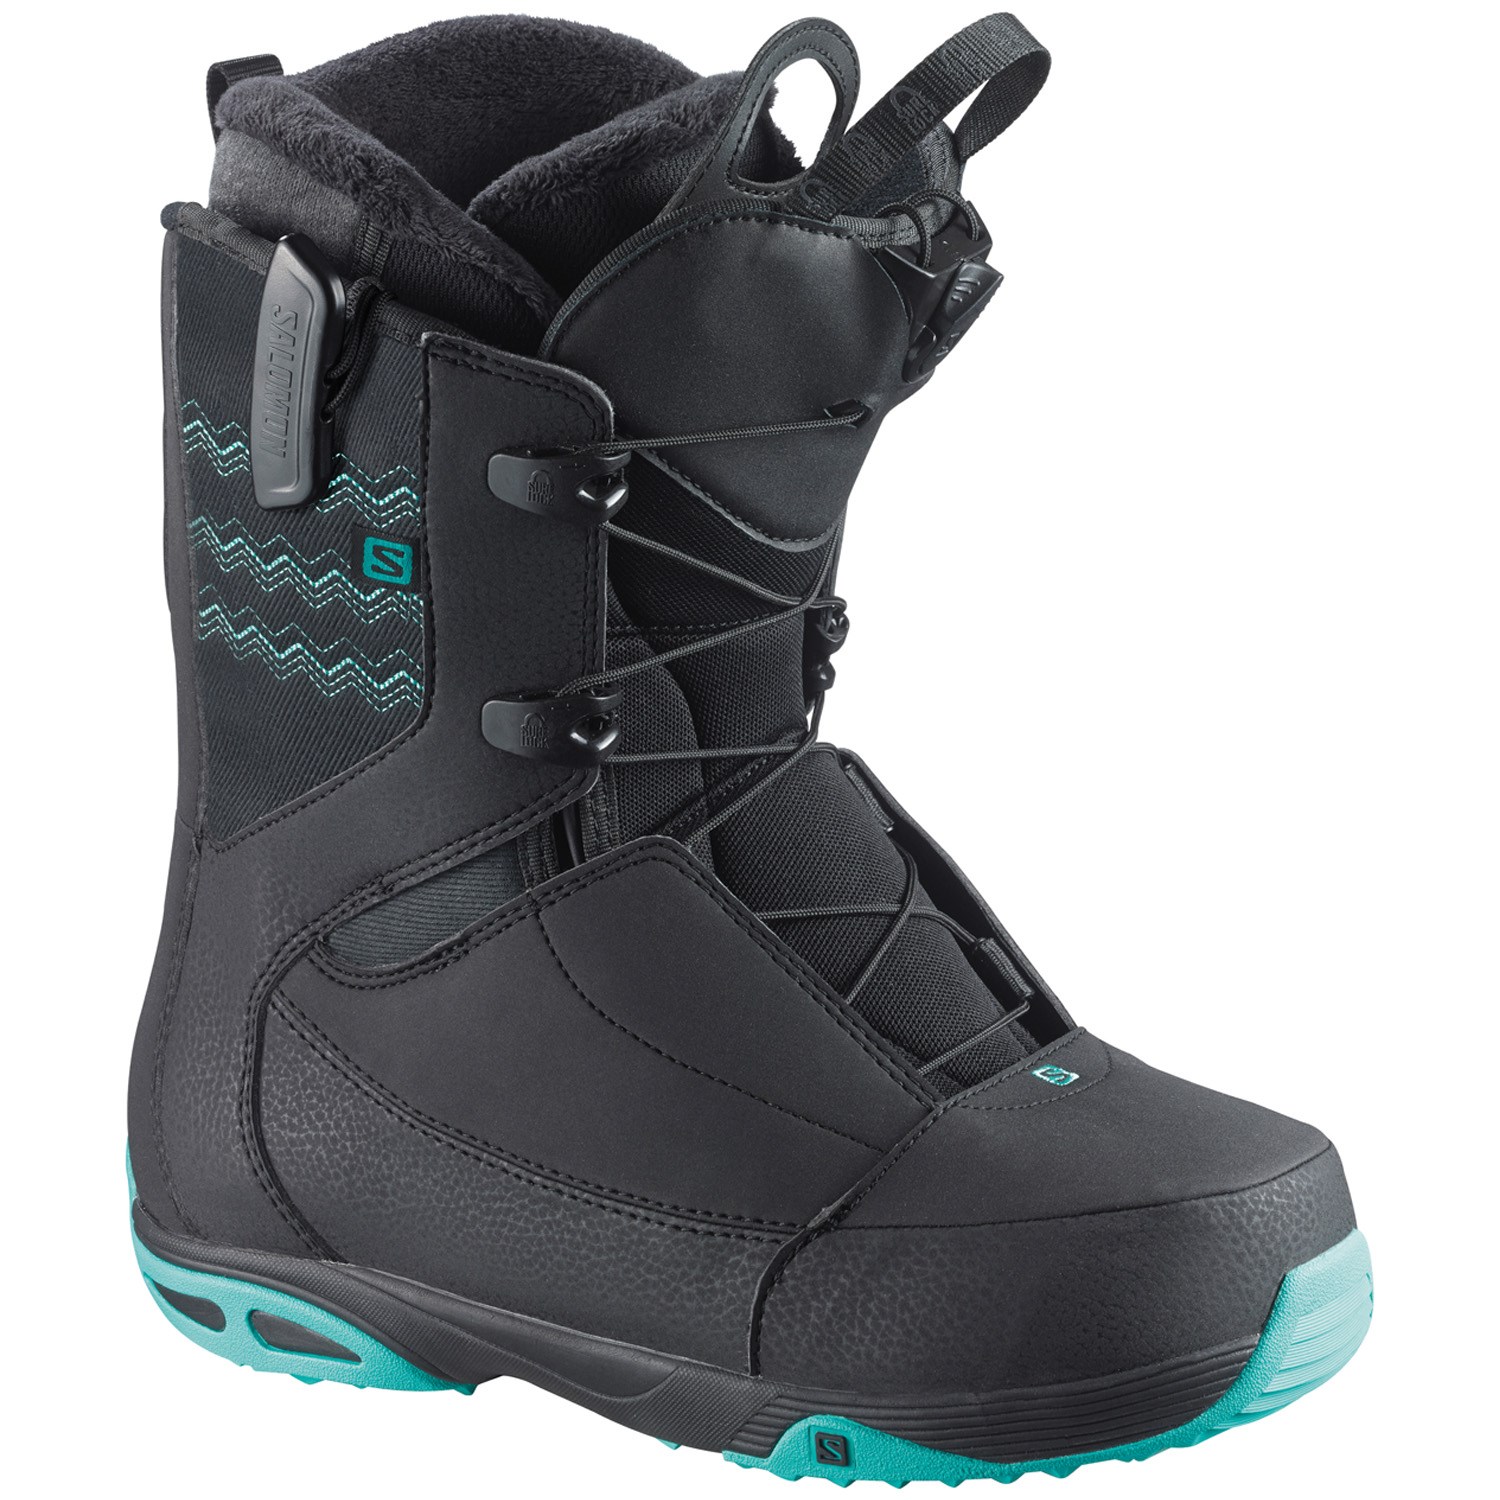 Salomon Ivy STR8JKT Snowboard Boots - Women's 2015 | evo